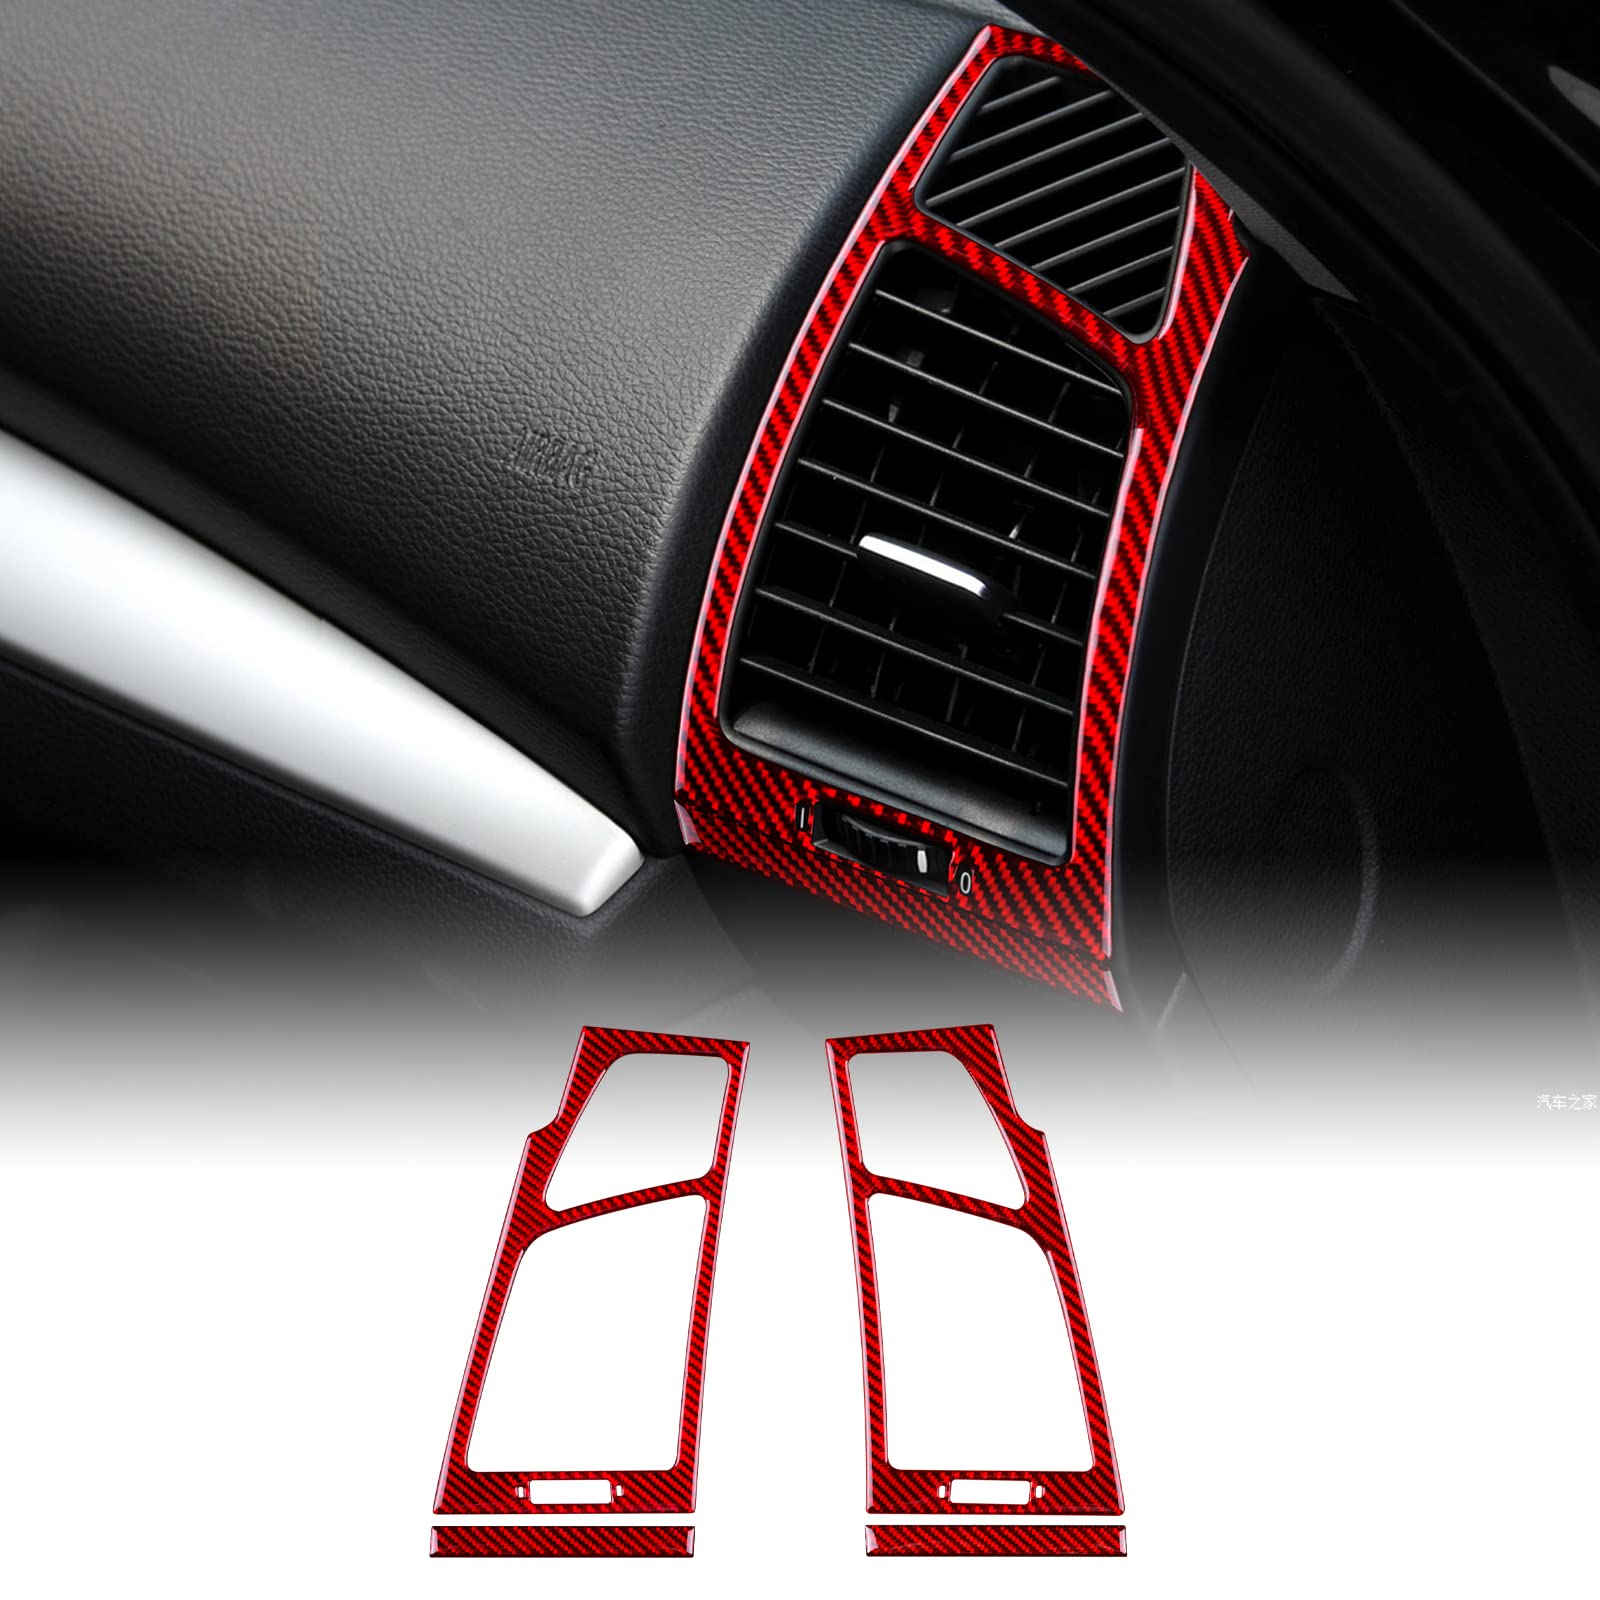 KUNGKIC Kohlefaser Auto Armaturenbrett Seite Luftauslass Entlüftung Rahmen Trim Aufkleber Innenbereich Dekorative Compatible with BMW 1er Reihe E81 E82 E87 E88 2008-2013 Zubehör (Rot) von KUNGKIC